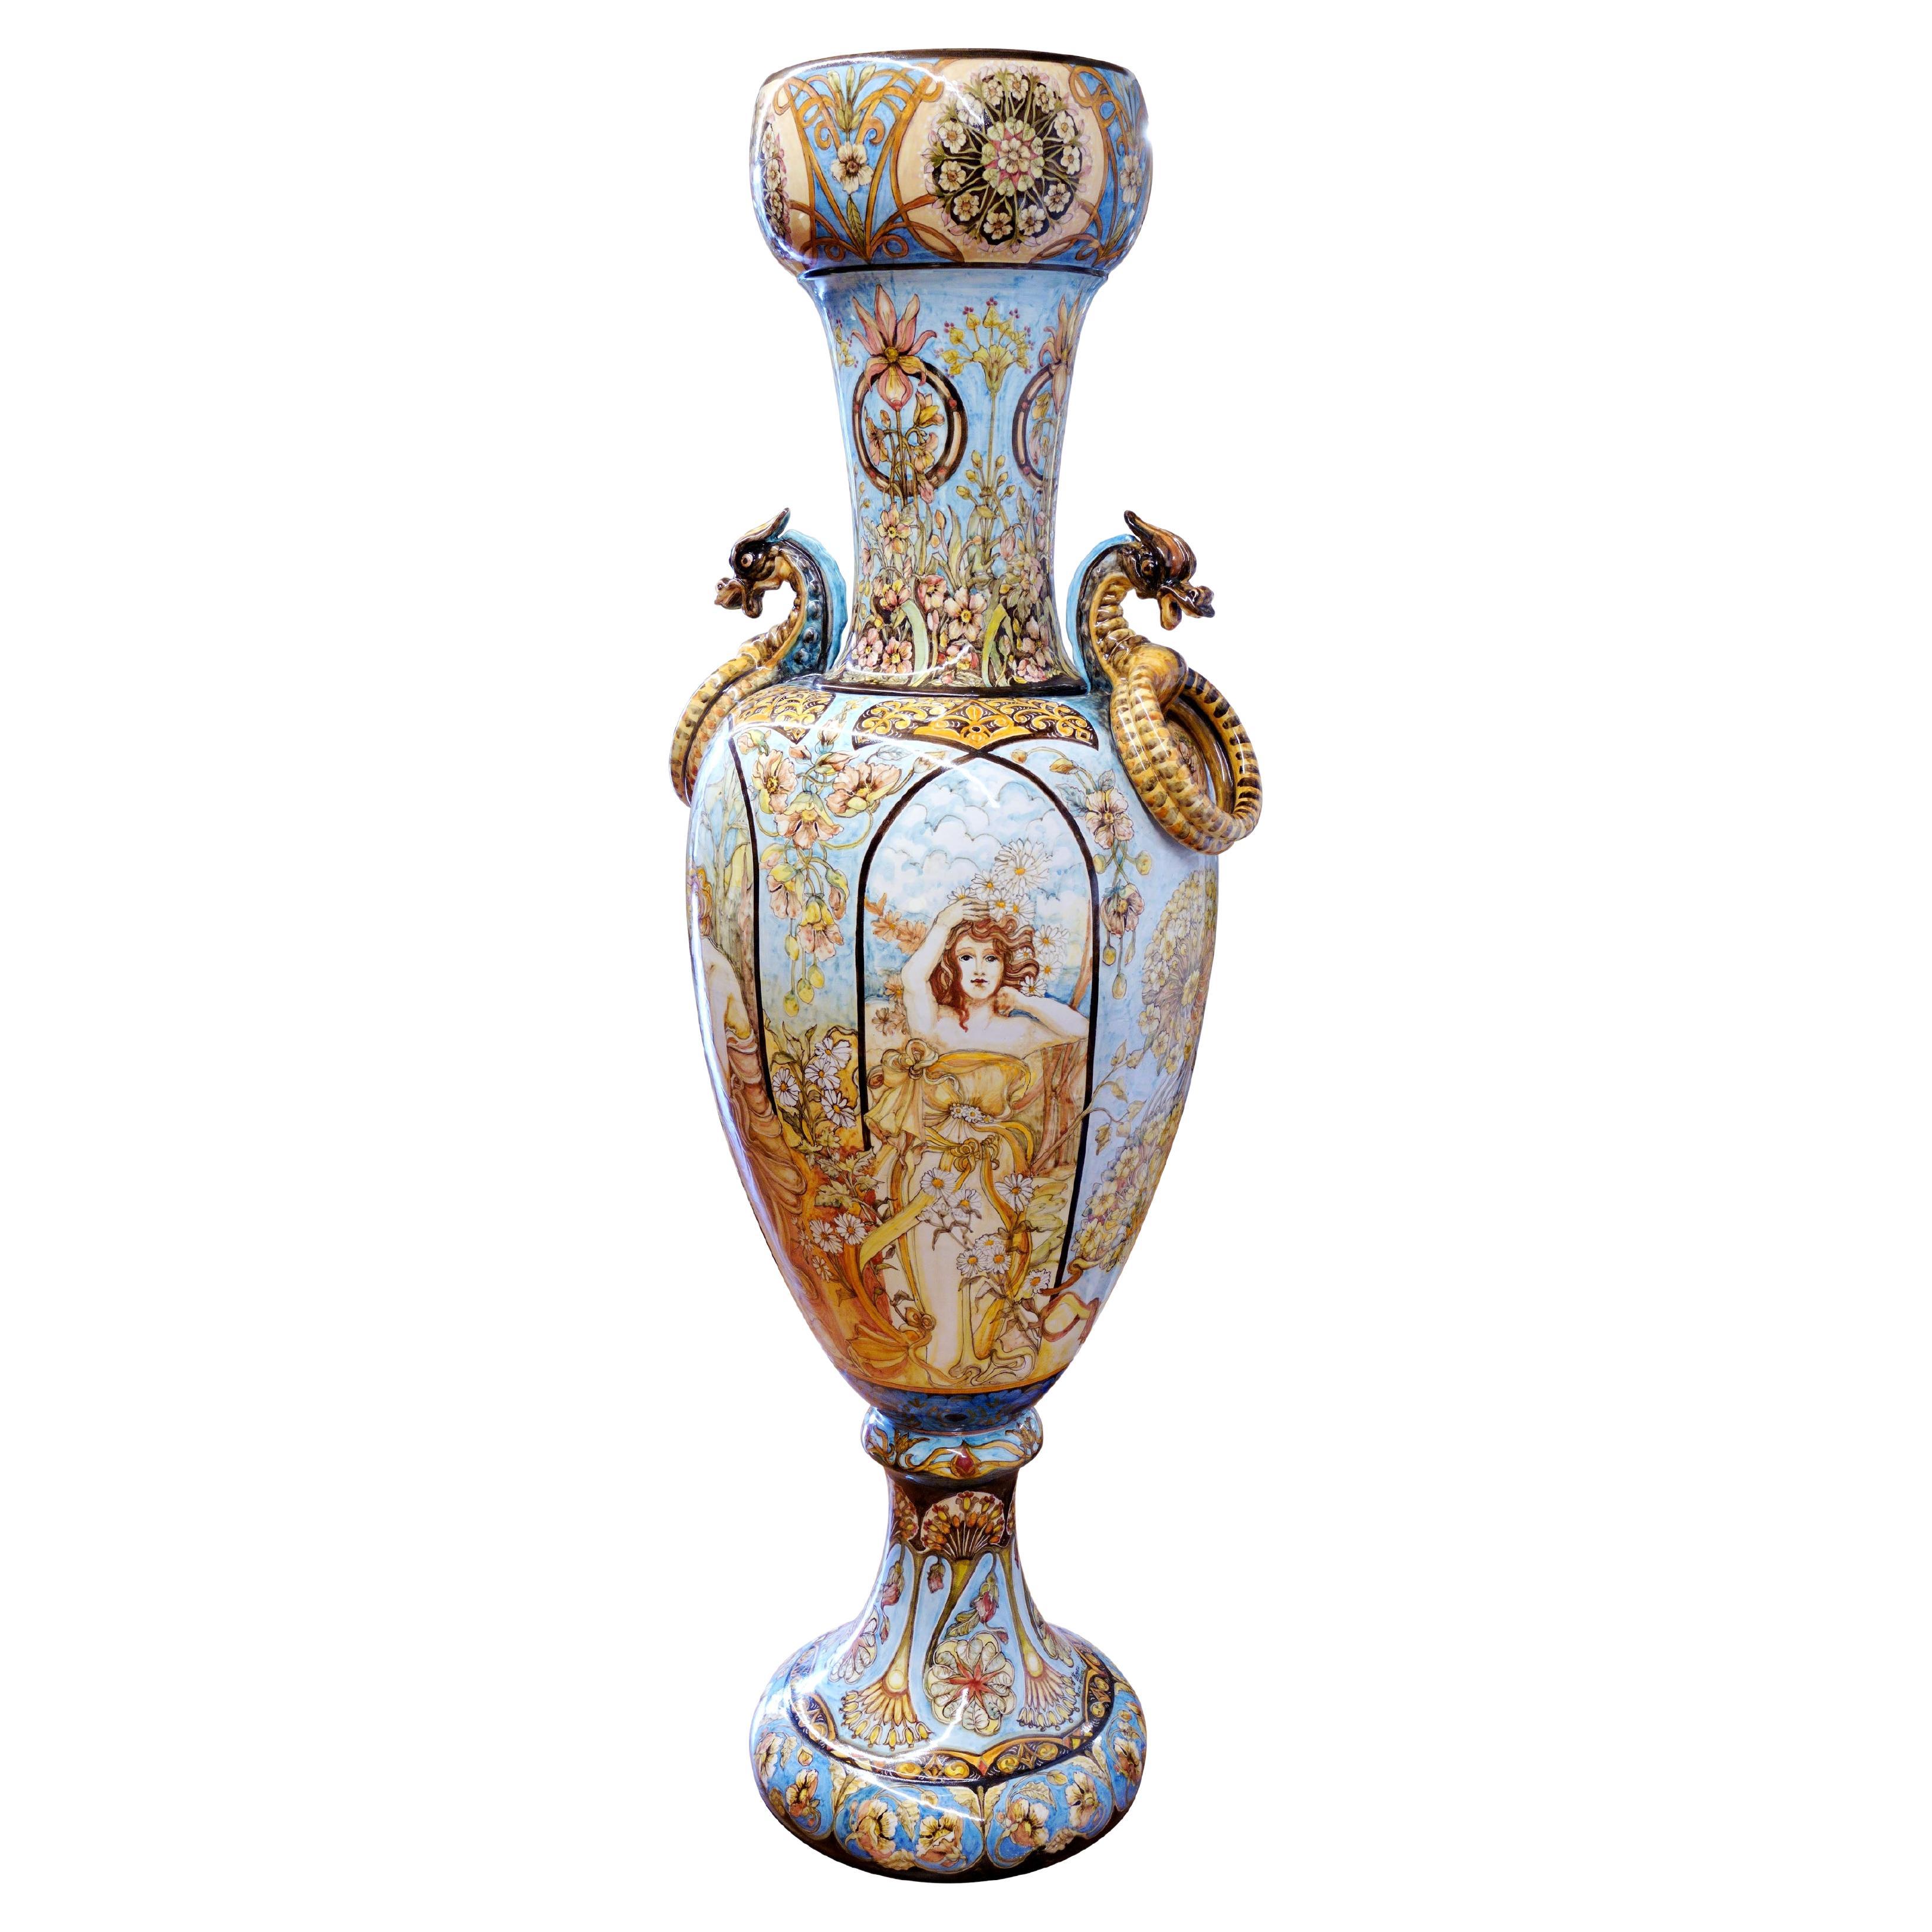 Sculpture Giant Amphora Vase Majolica Hand Painted Four Seasons Art Nouveau